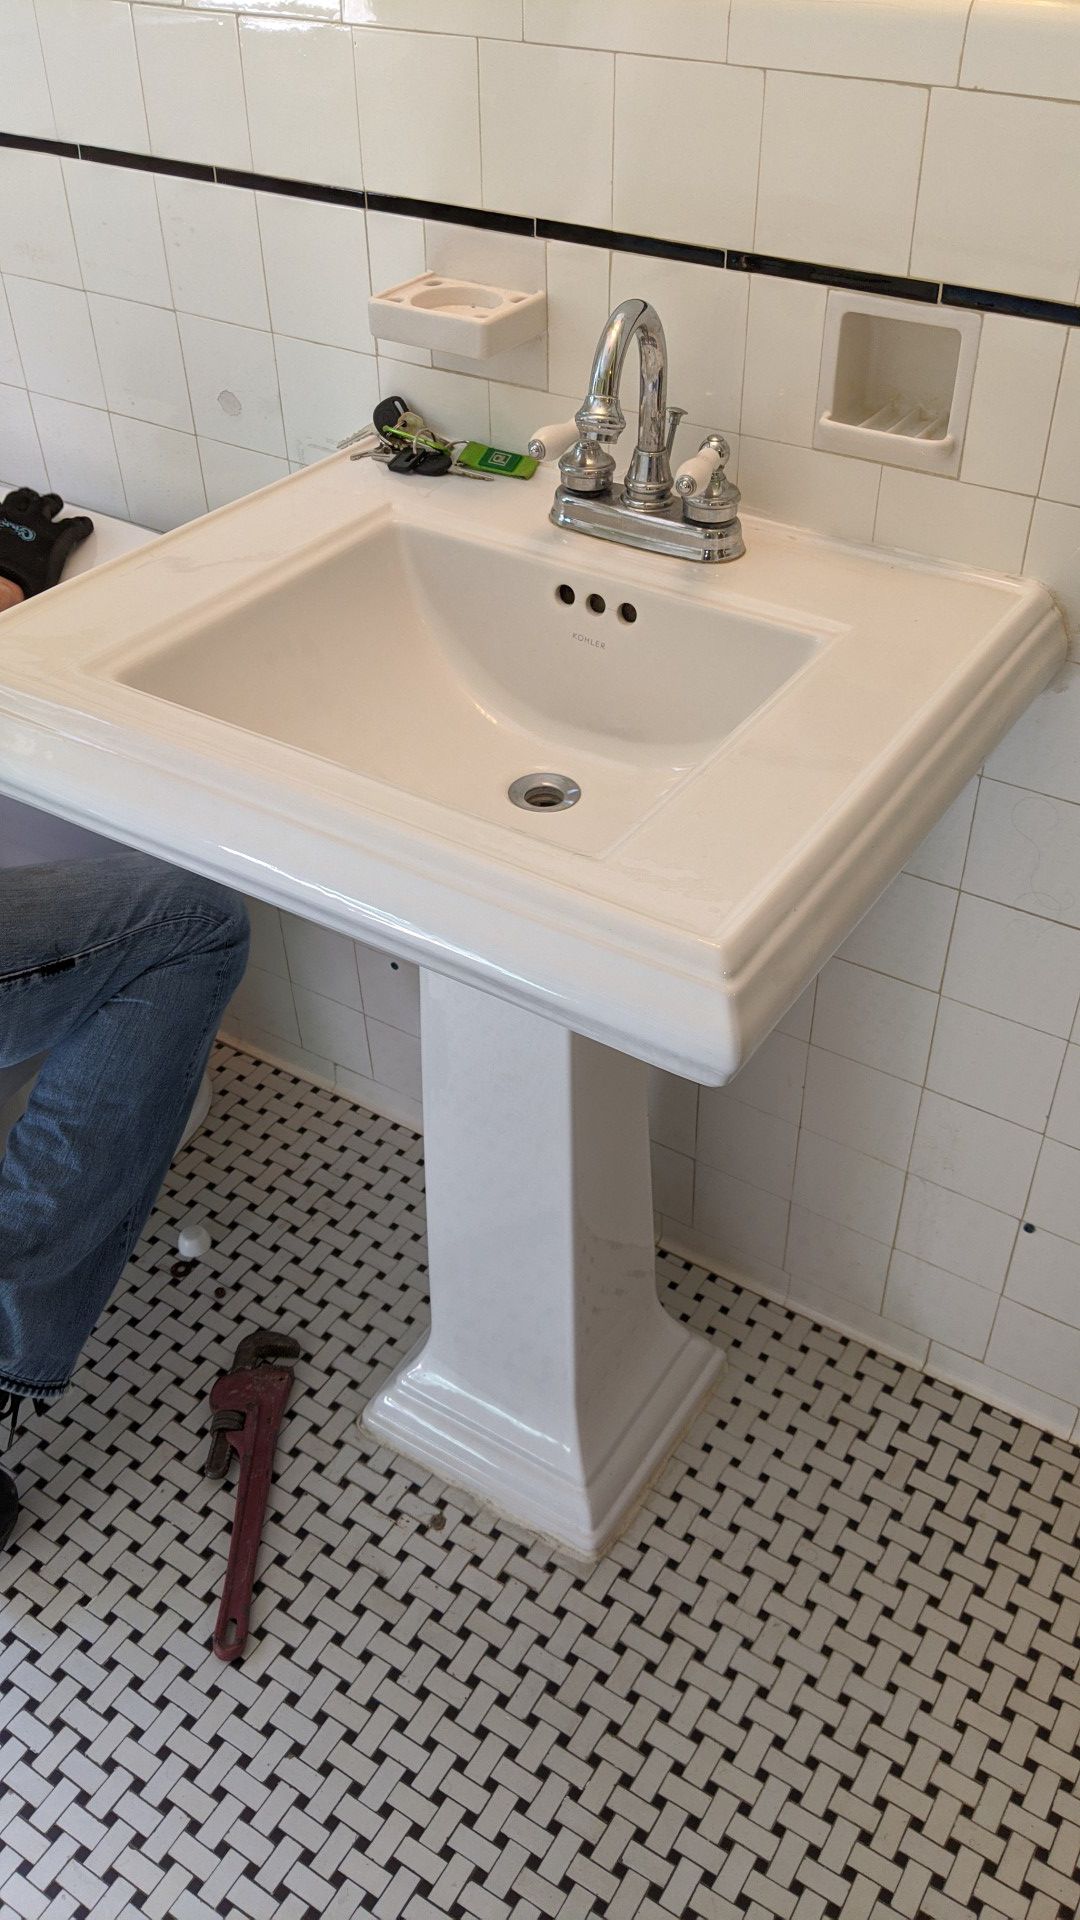 Kohler pedestal sink and faucet